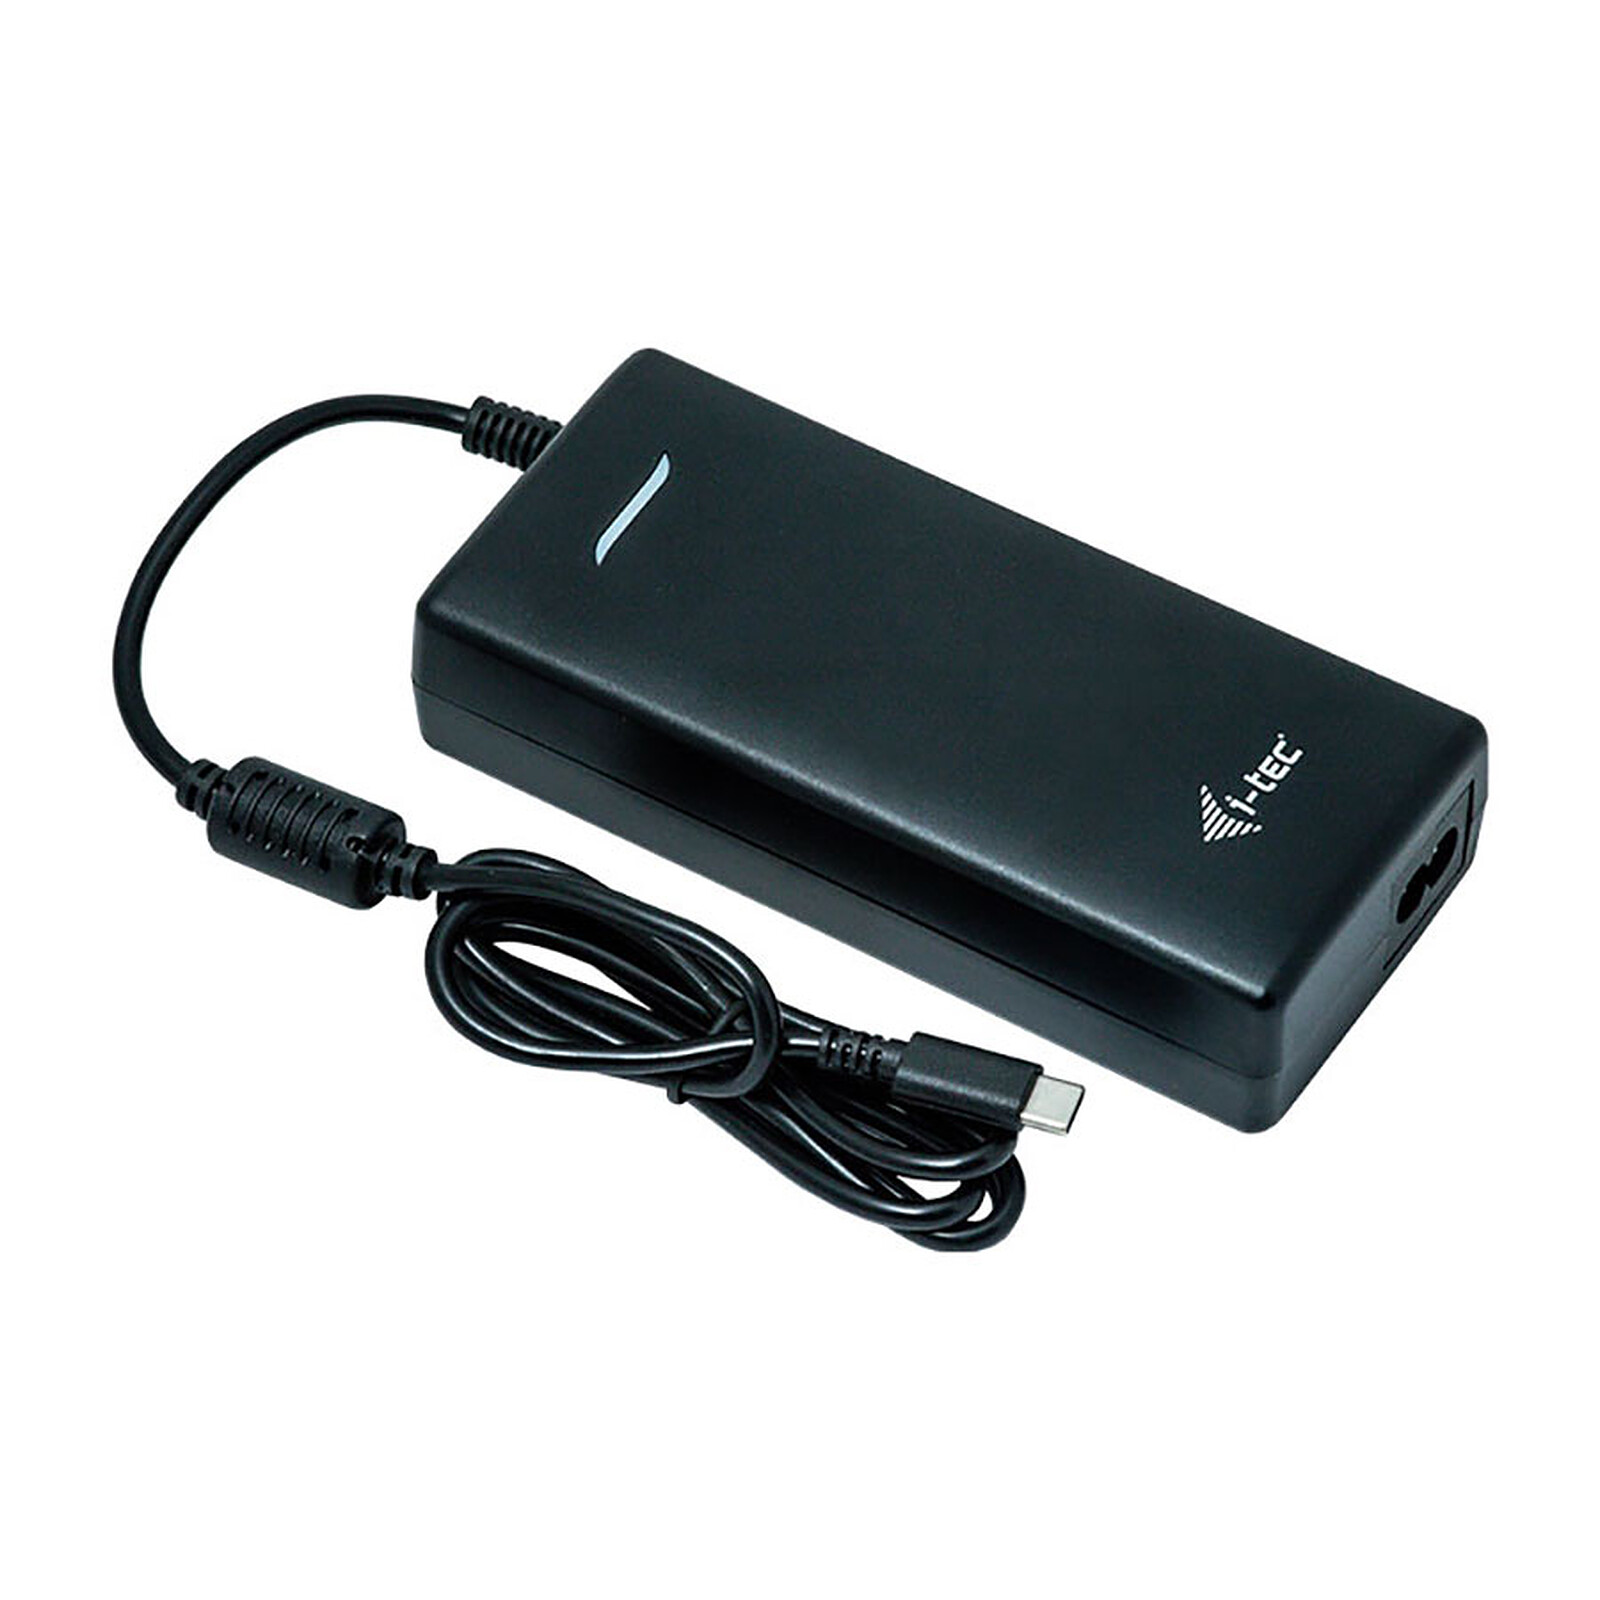 i-tec Cargador universal USB-C Power Delivery 3.0 + 1 x USB 3.0